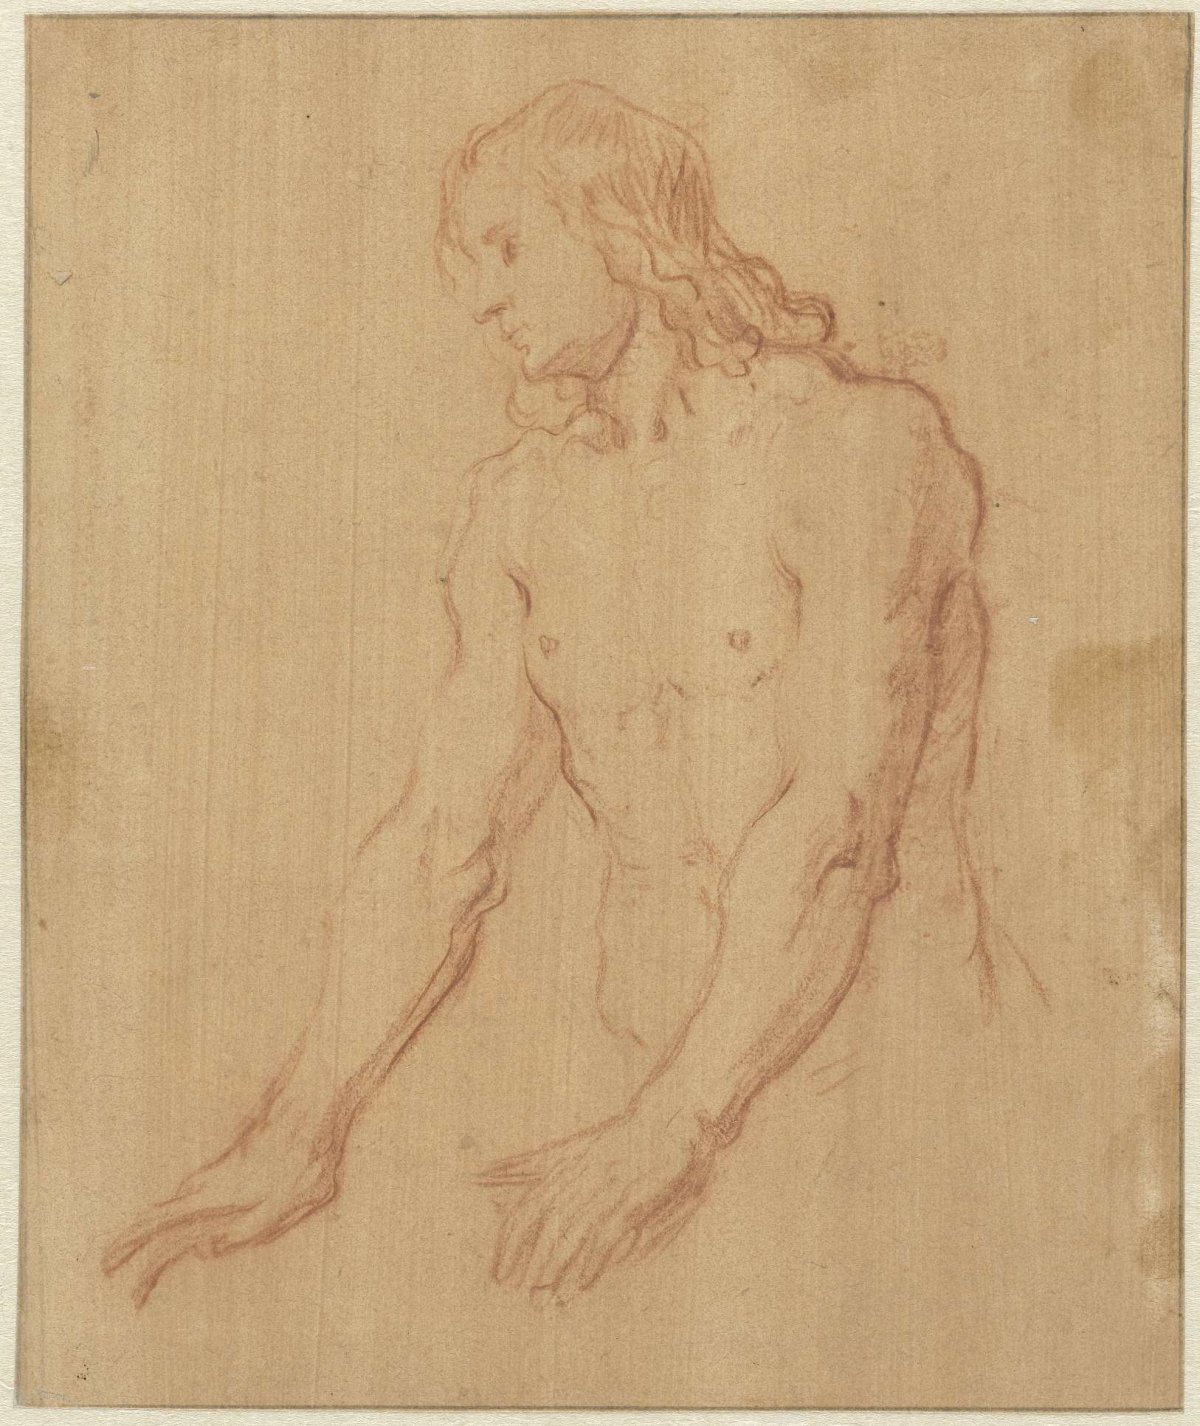 Nude Young Man, Half Length, Pieter Lastman, 1600 - 1633